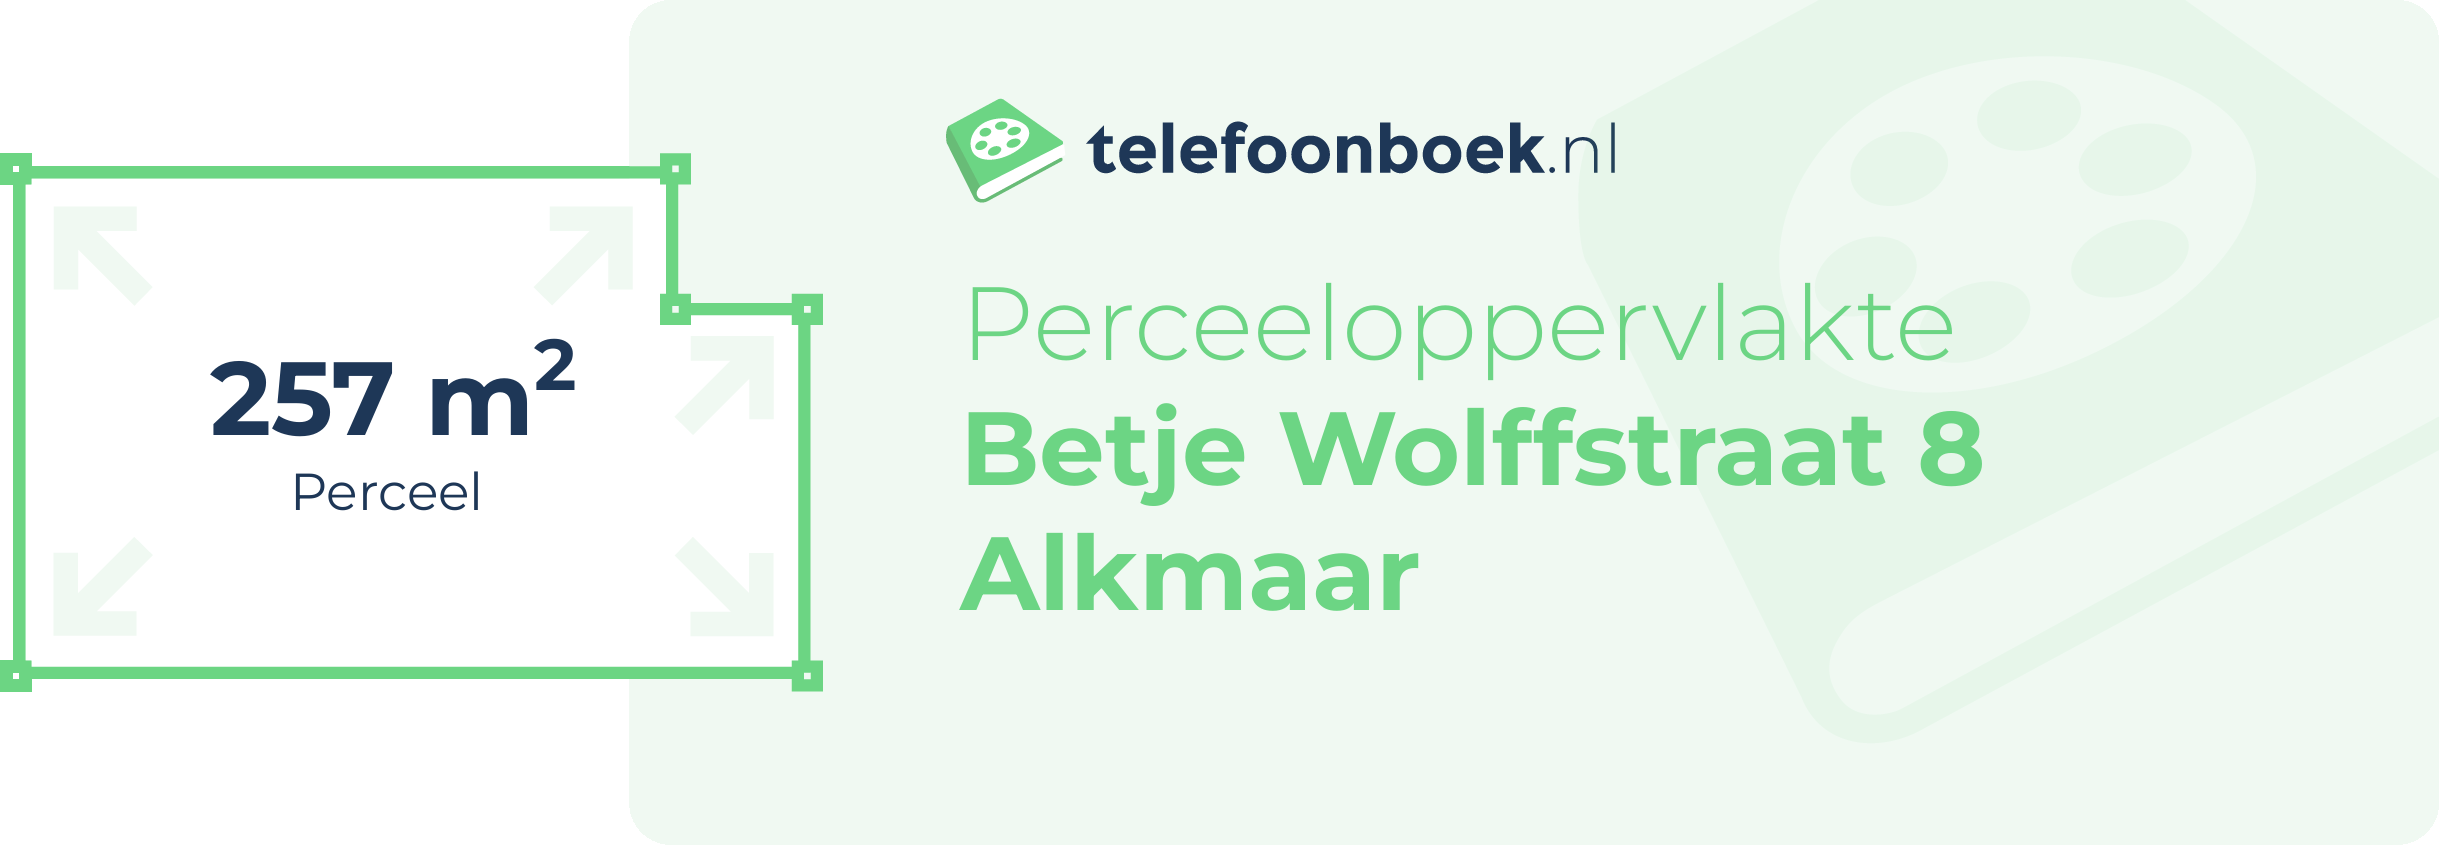 Perceeloppervlakte Betje Wolffstraat 8 Alkmaar